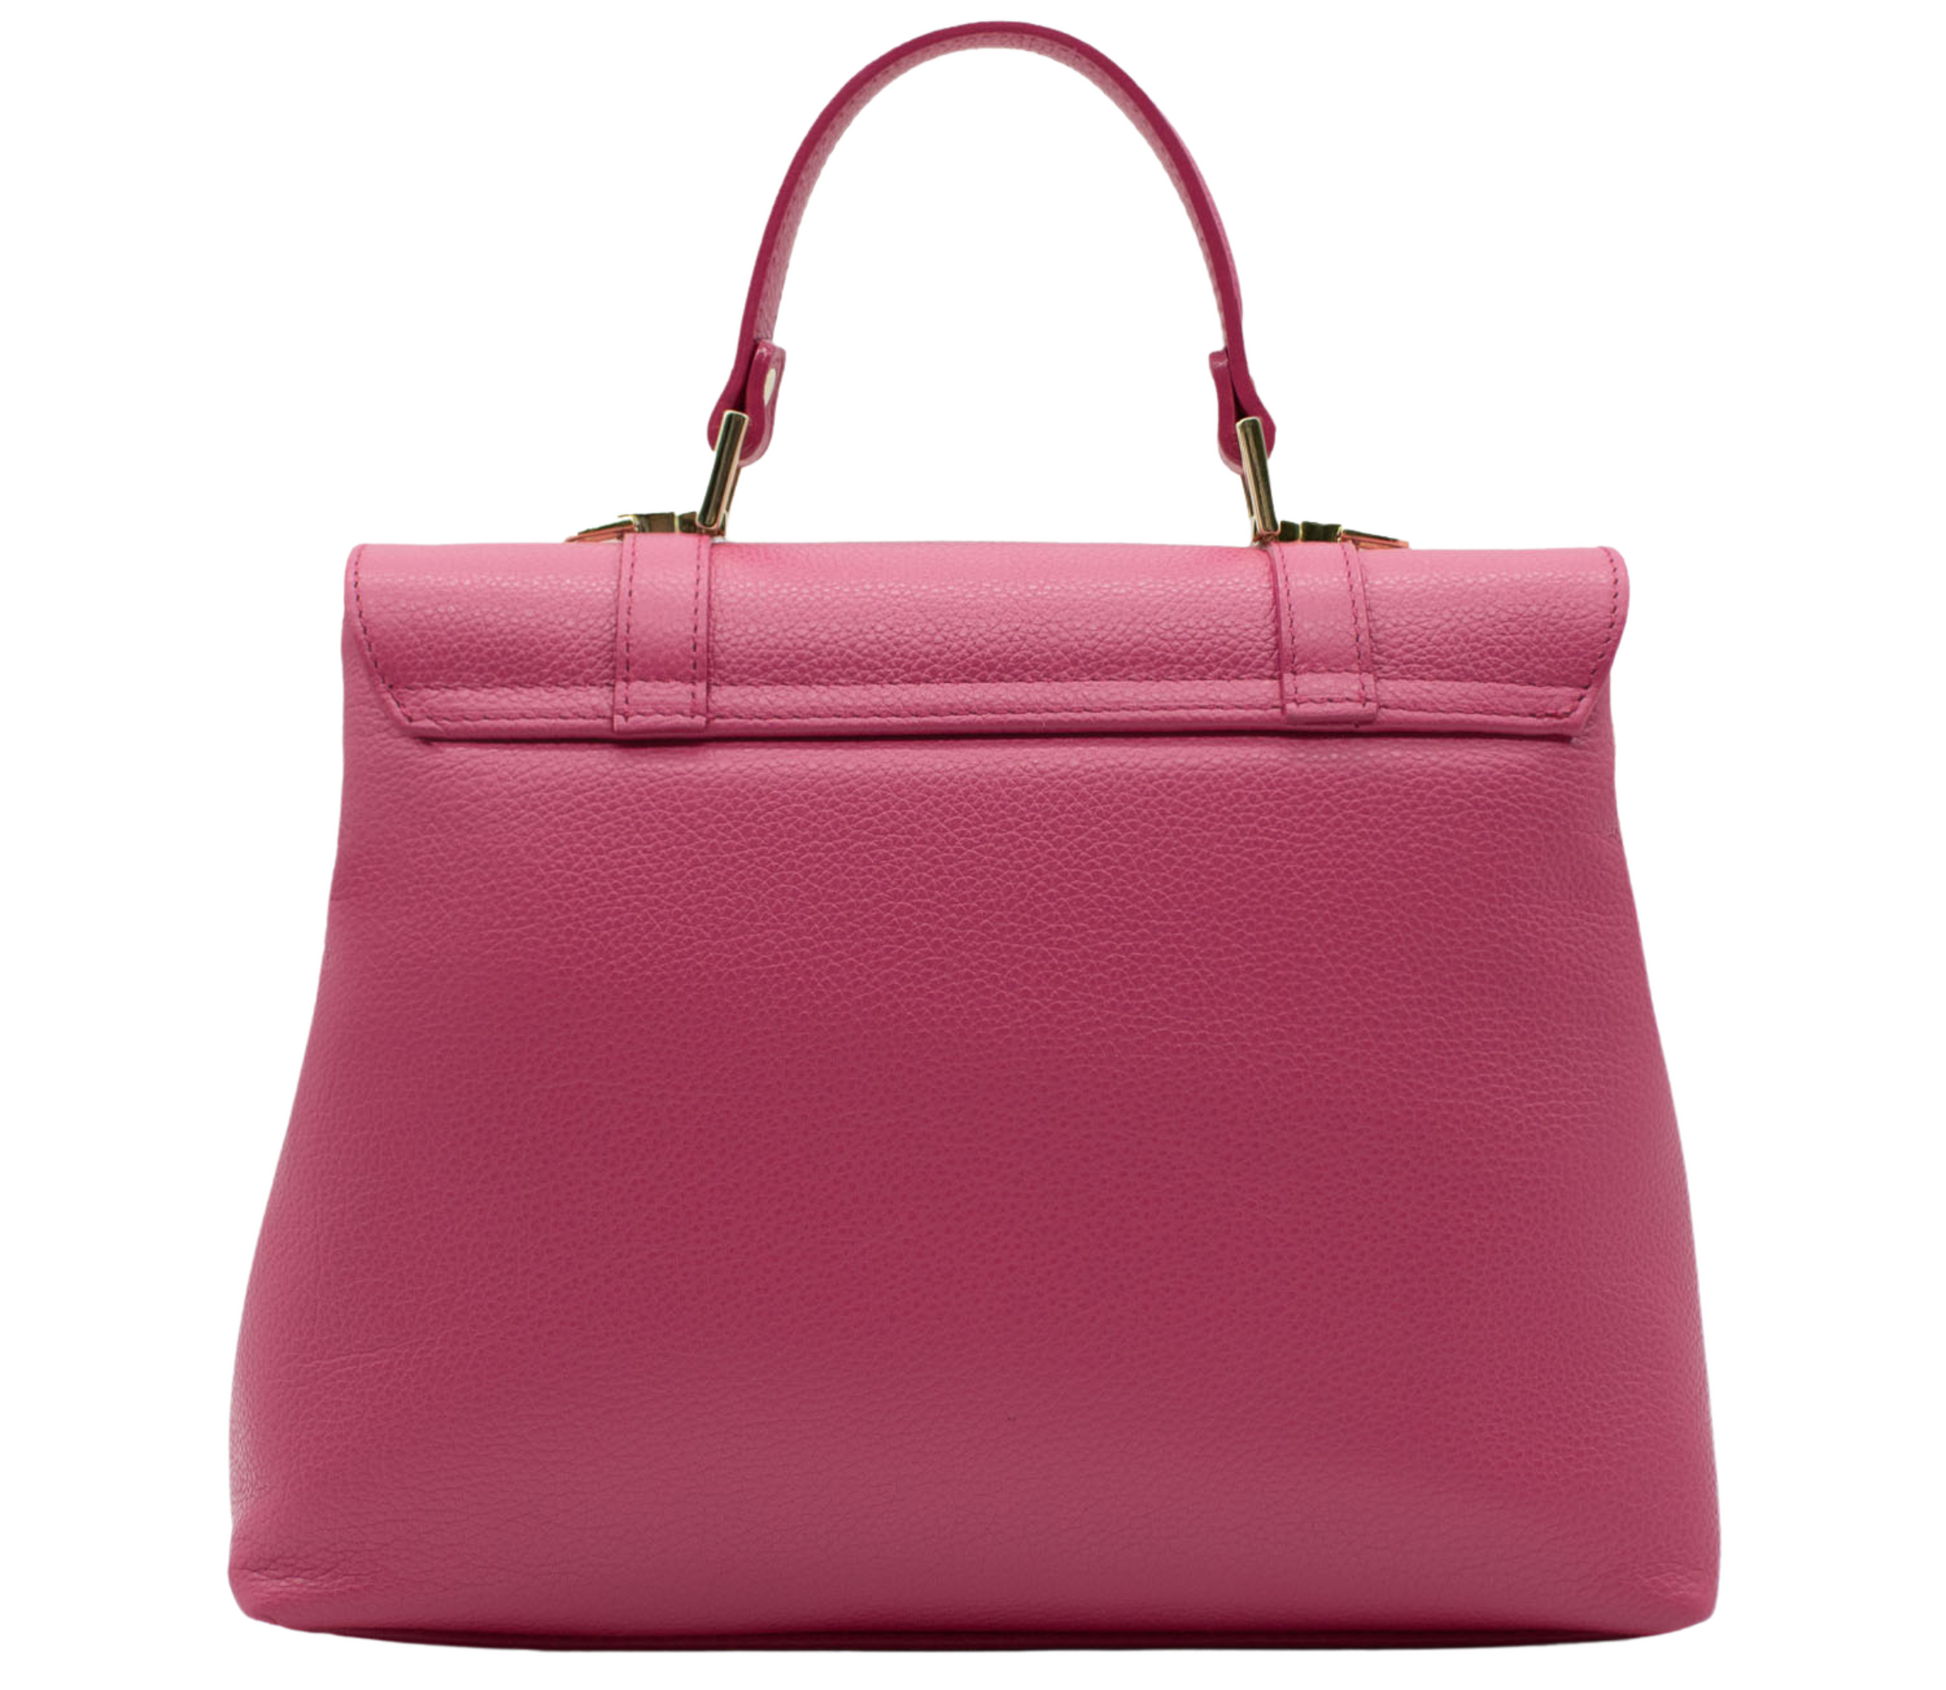 Cavalinho Muse Leather Handbag - HotPink - 18300508.18_P03